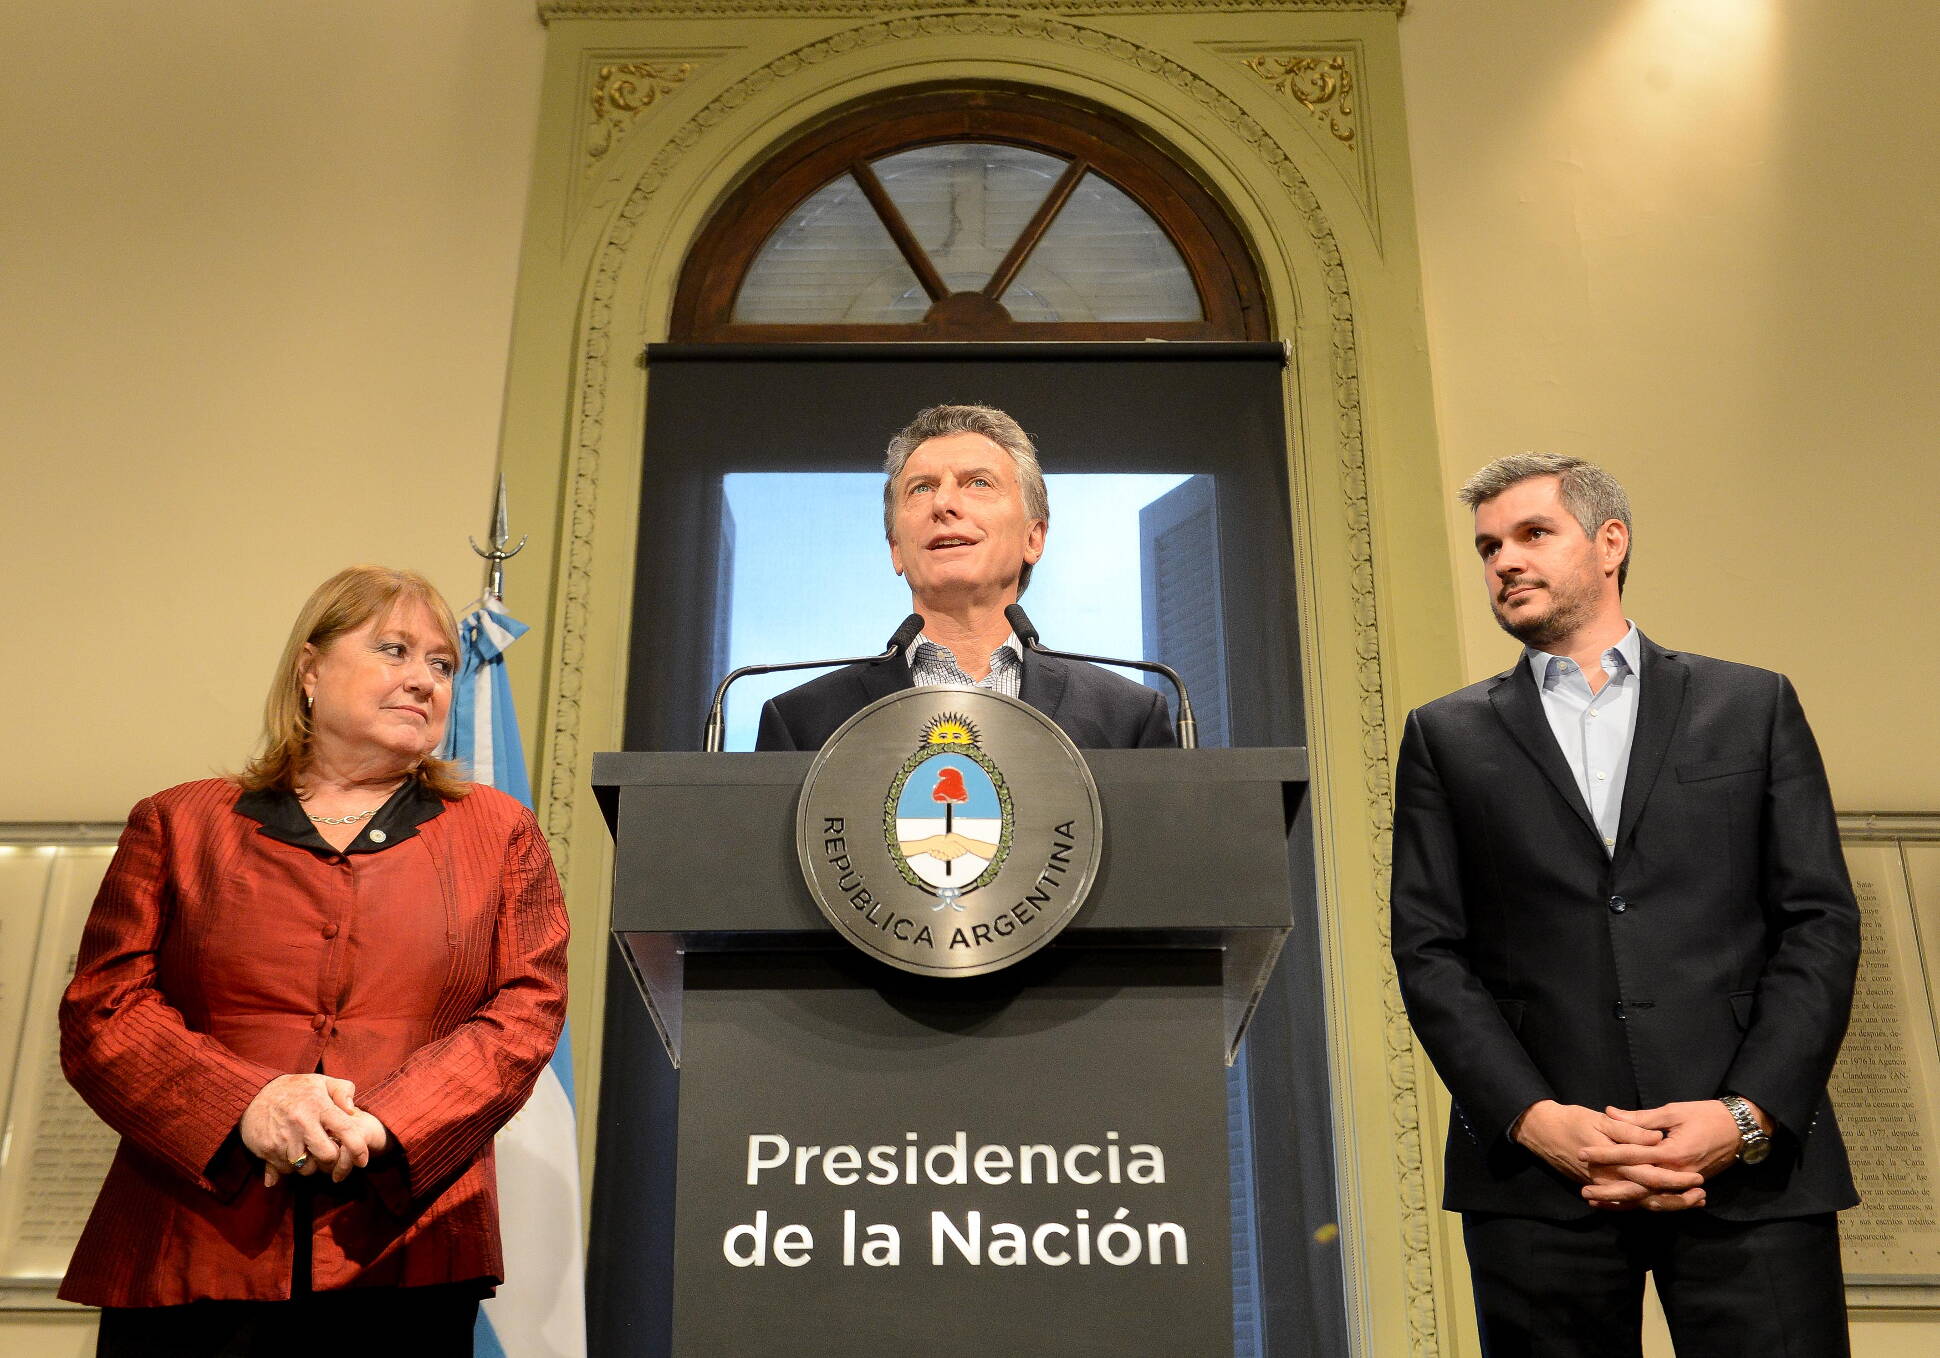 El embajador Jorge Faurie reemplazará a Susana Malcorra al frente de la Cancillería